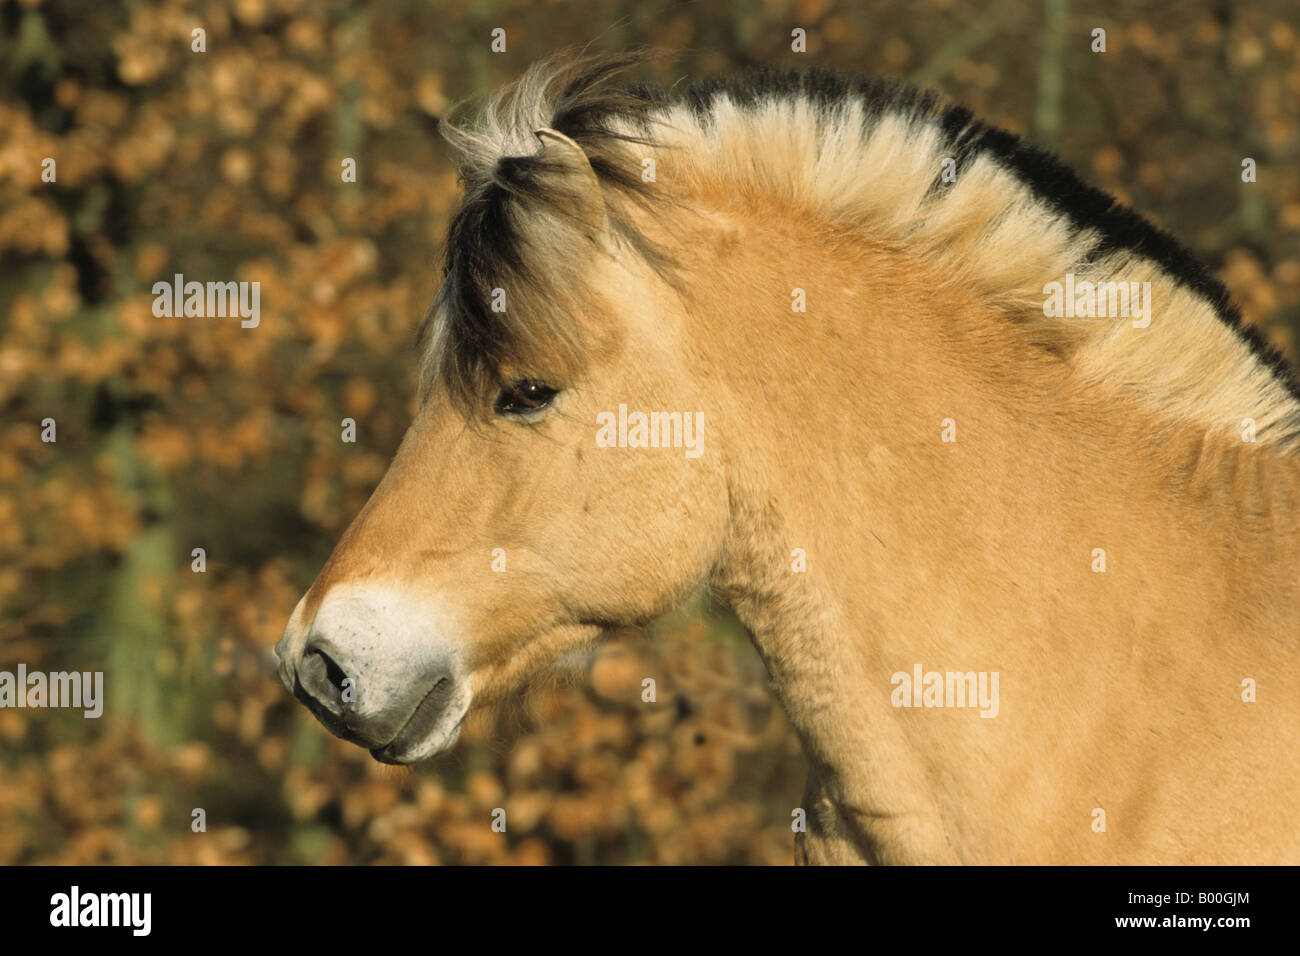 Fjord Cavallo (Equus caballus), il ritratto di uno stallone Foto Stock